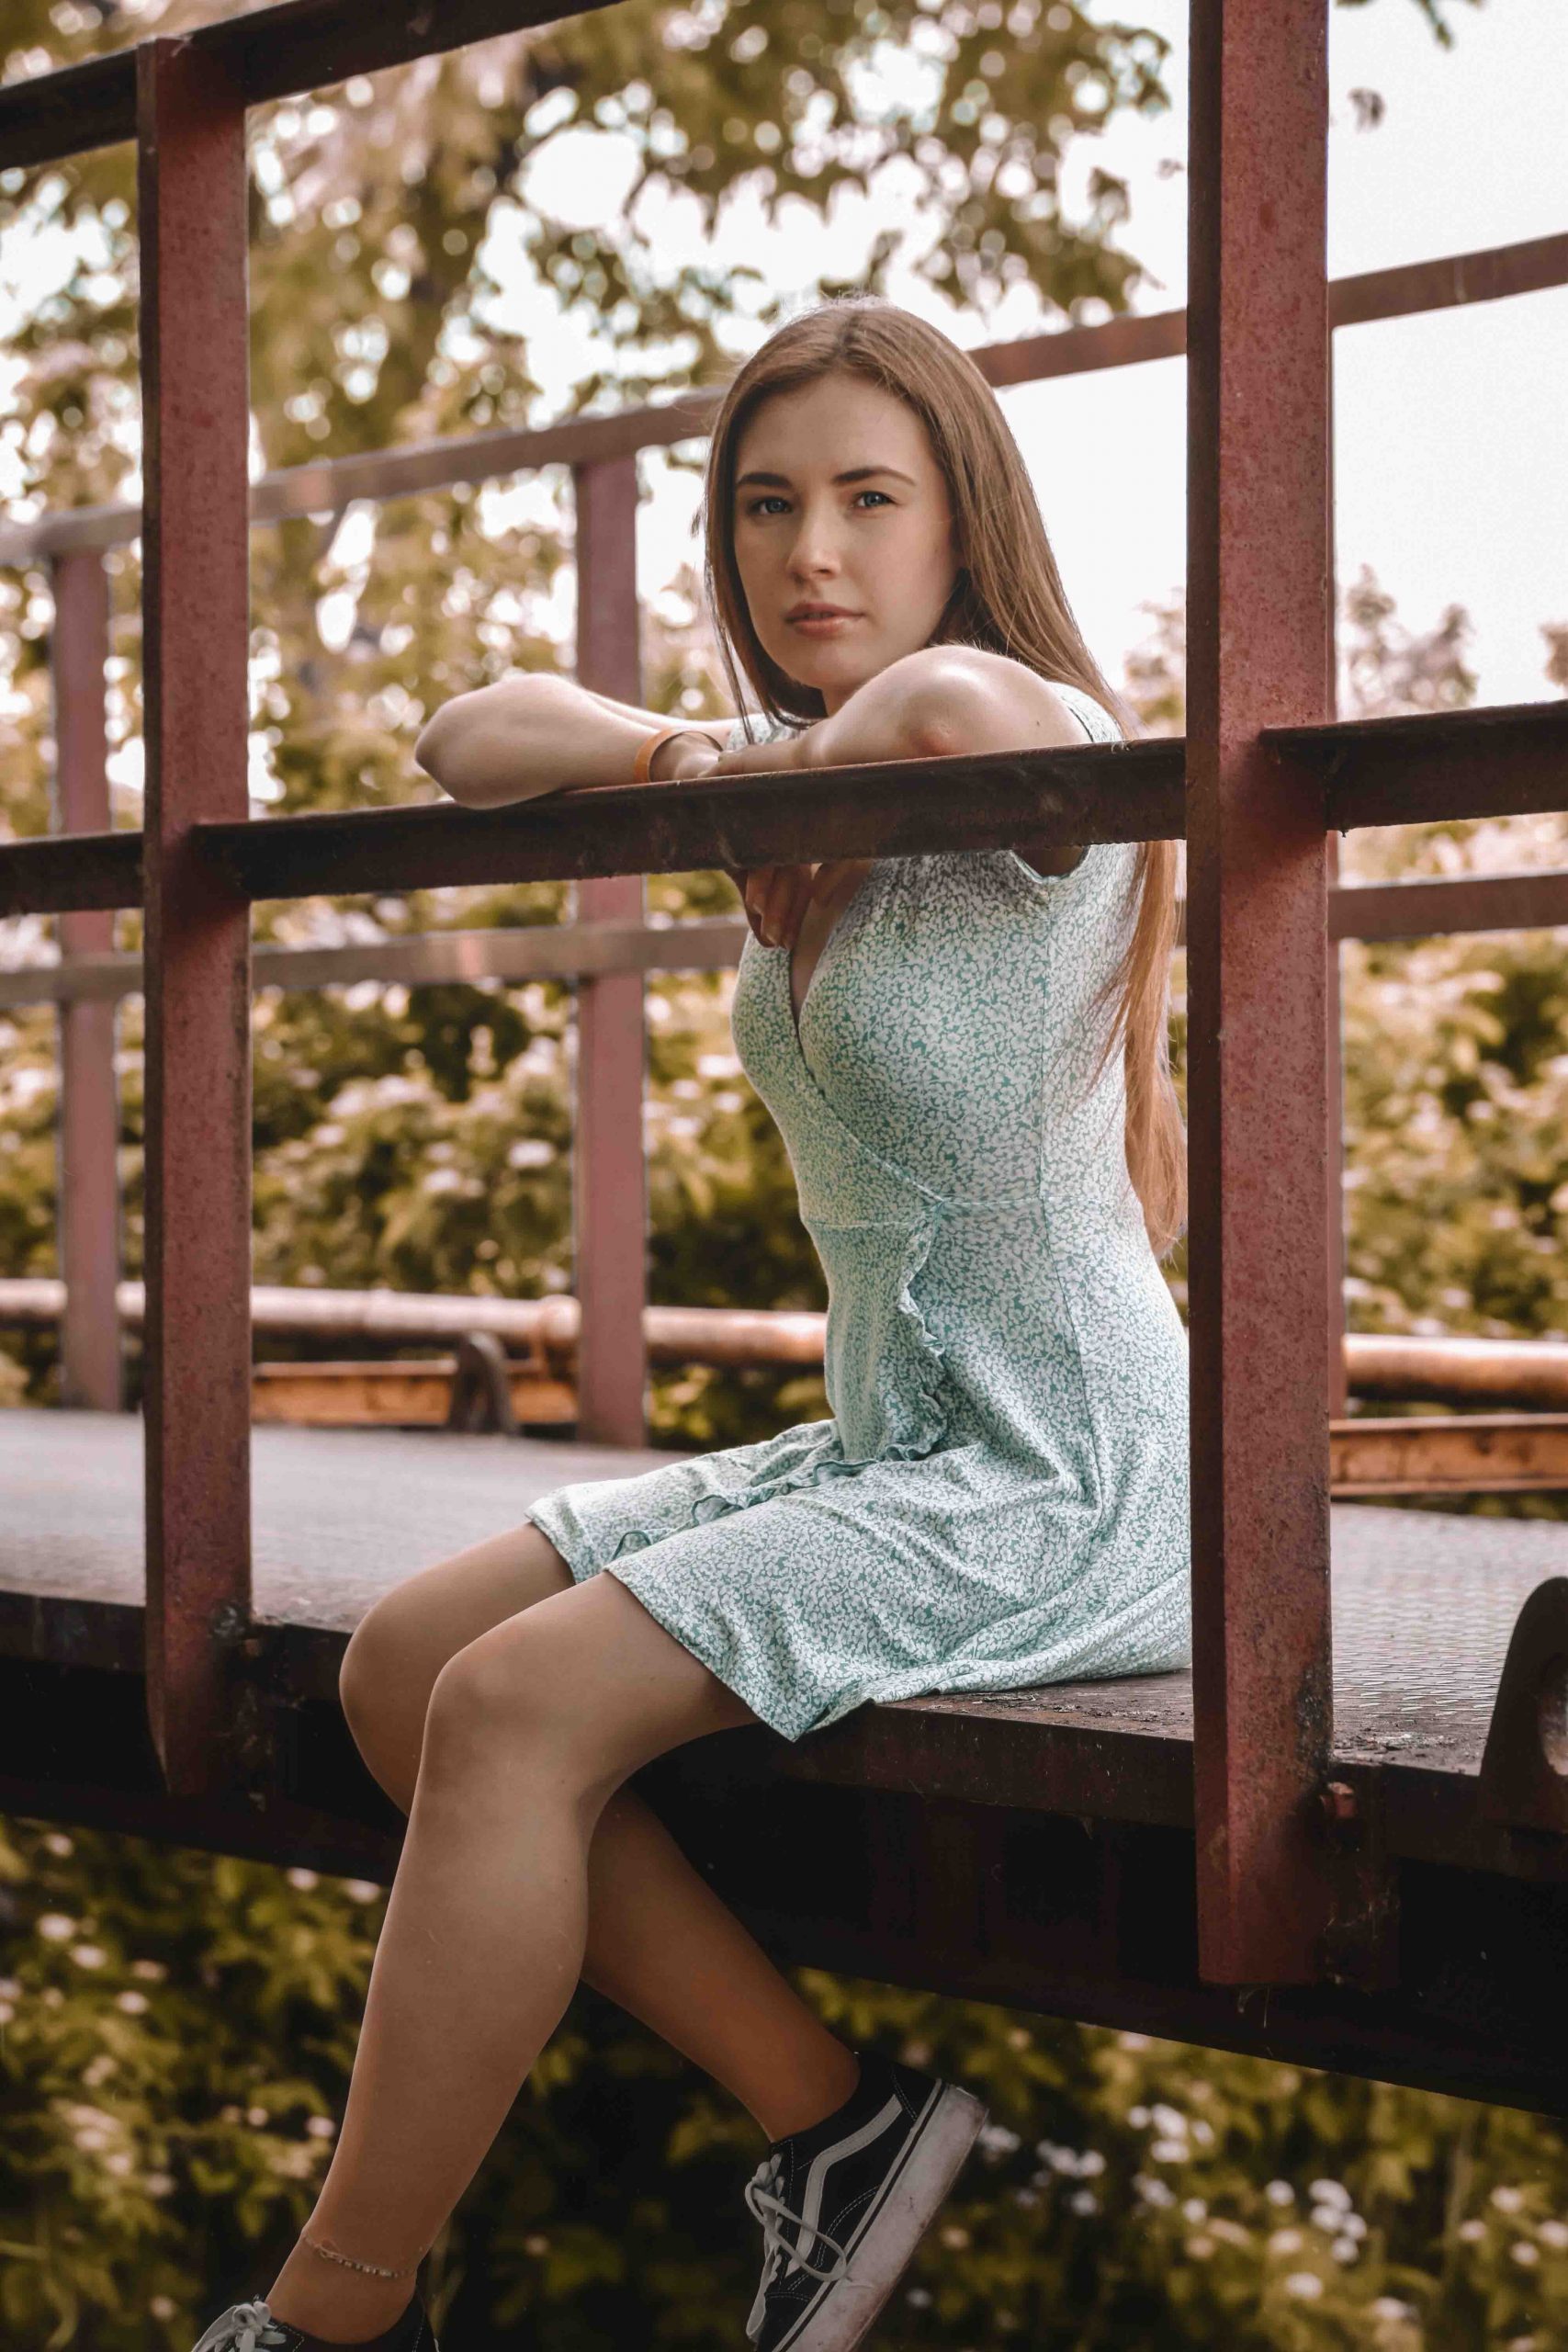 co gái ngồi trên cầu hạnh phúc lili cambalova unsplash